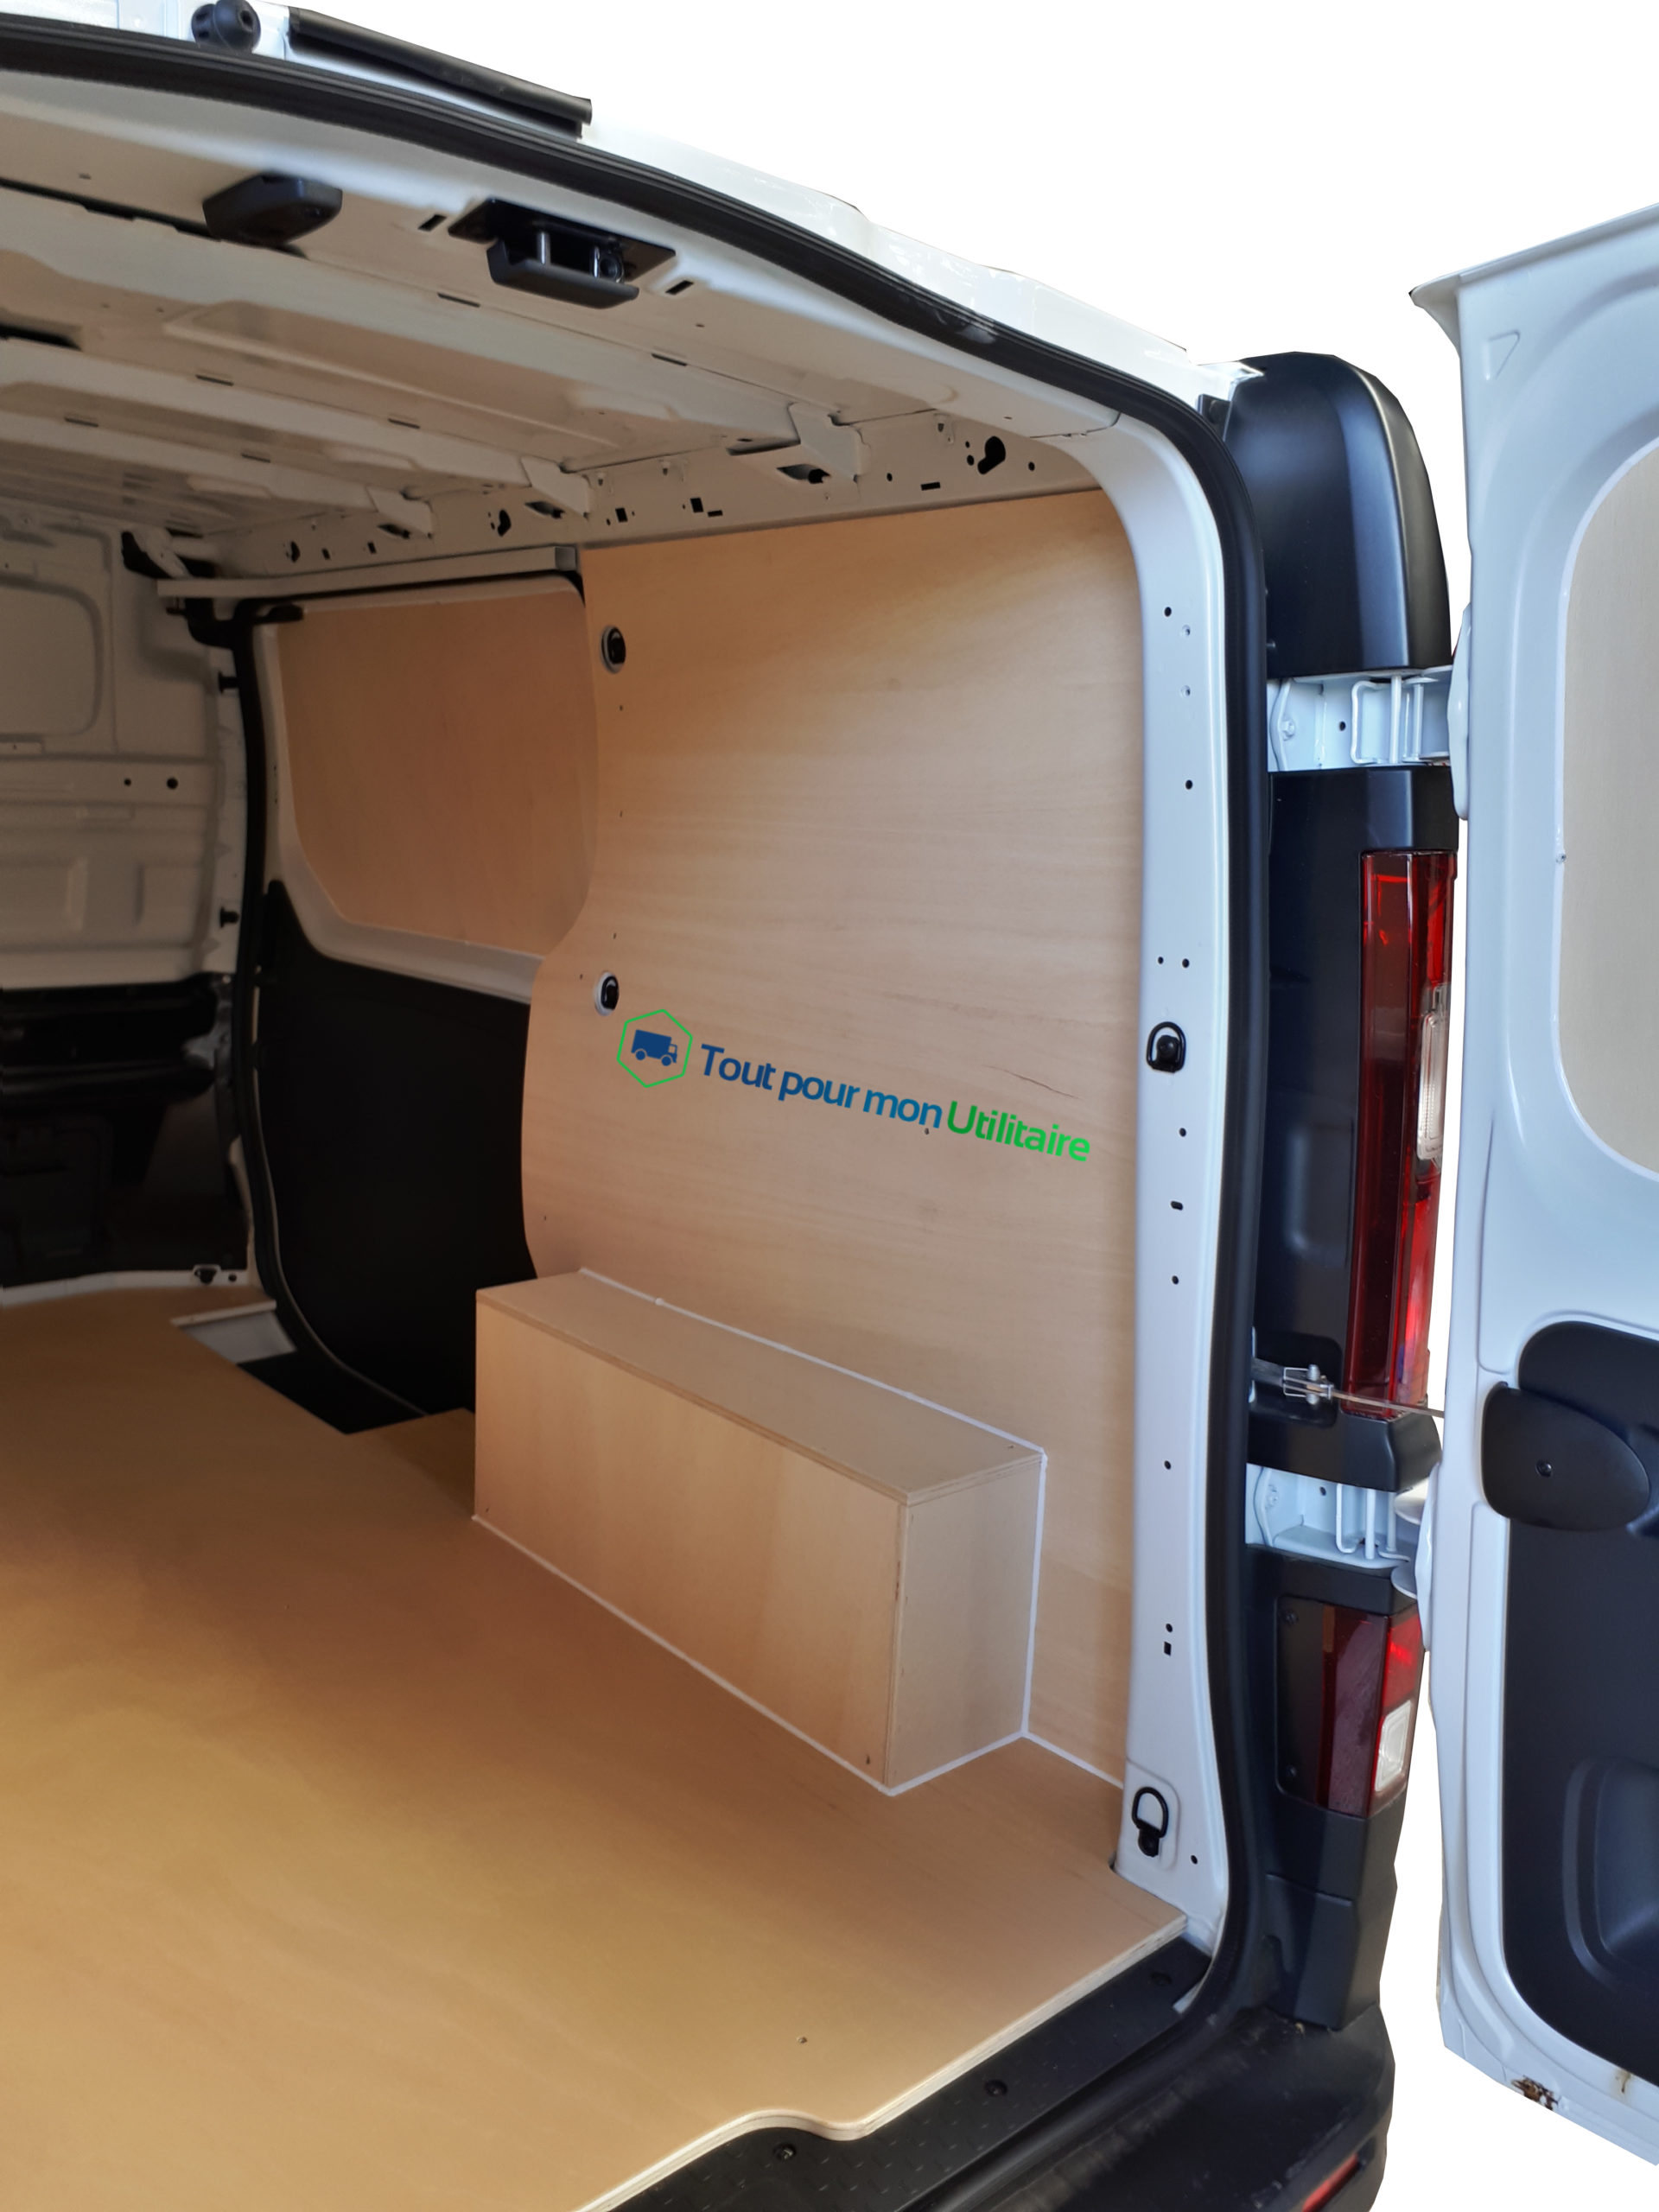 Habillage bois parois et portes intérieures pour Renault Trafic 2014+